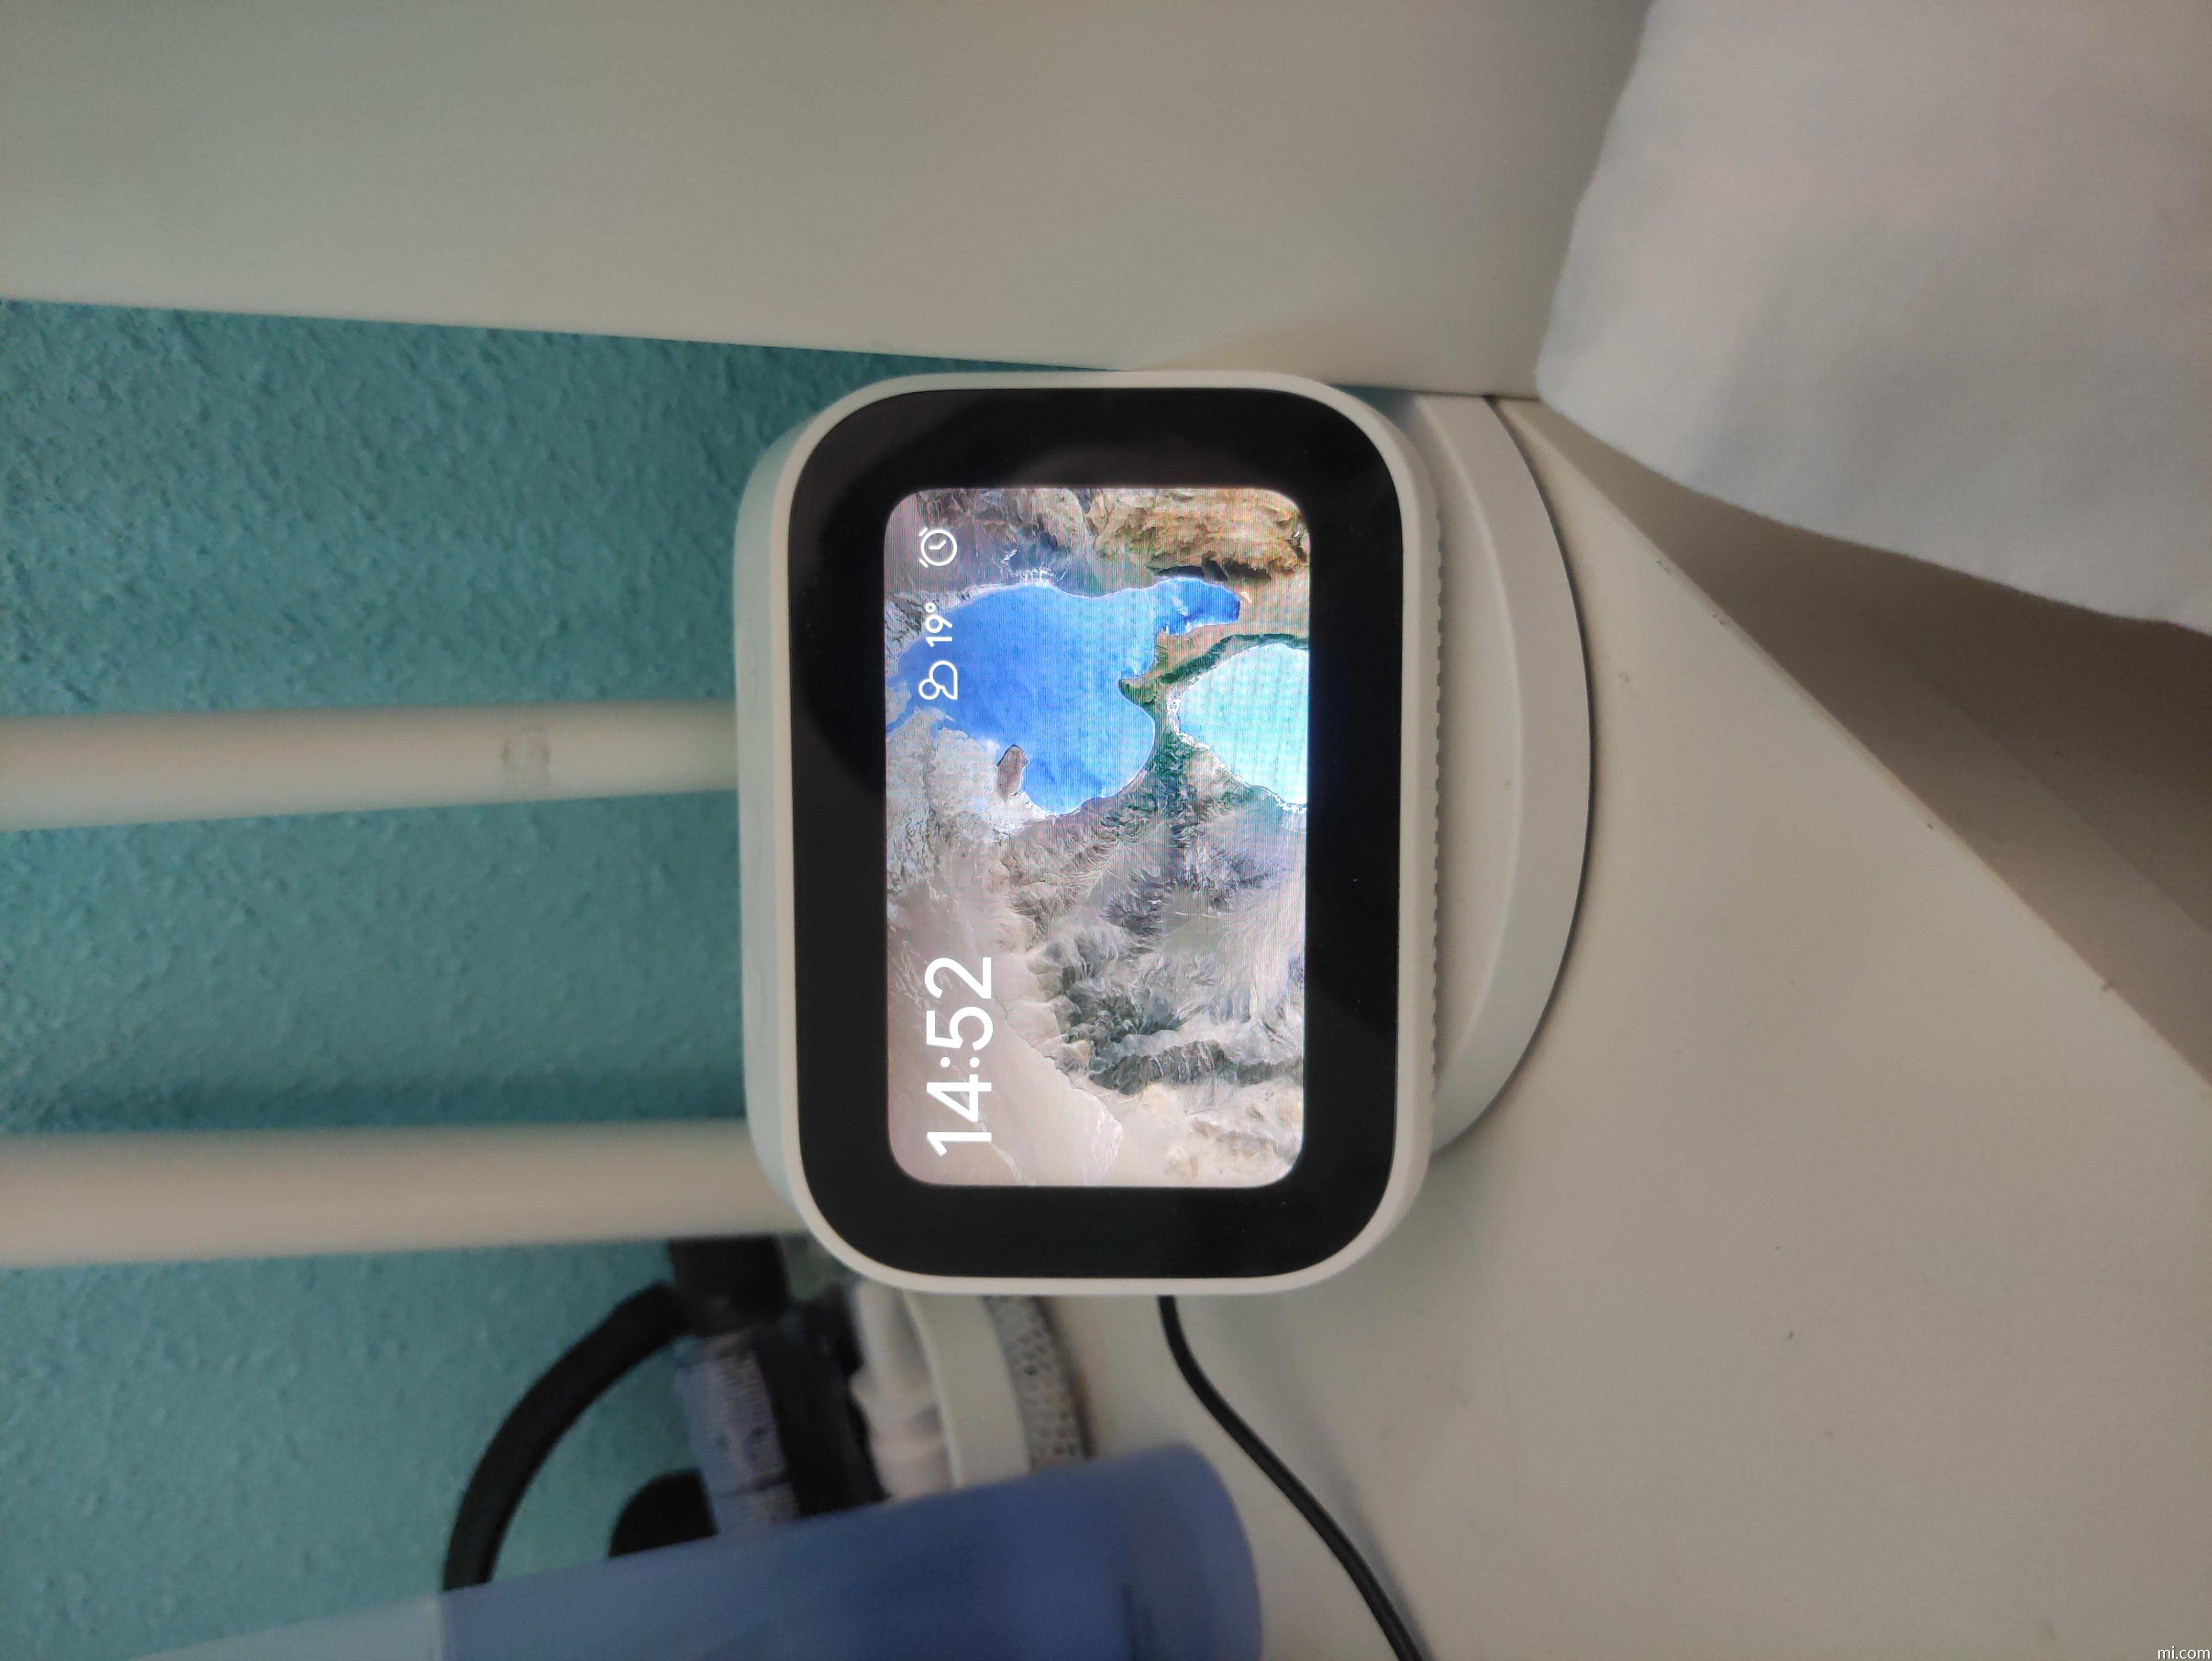 Xiaomi Mi Smart Clock – Reloj Despertador Inteligente, Envío 48/72 horas